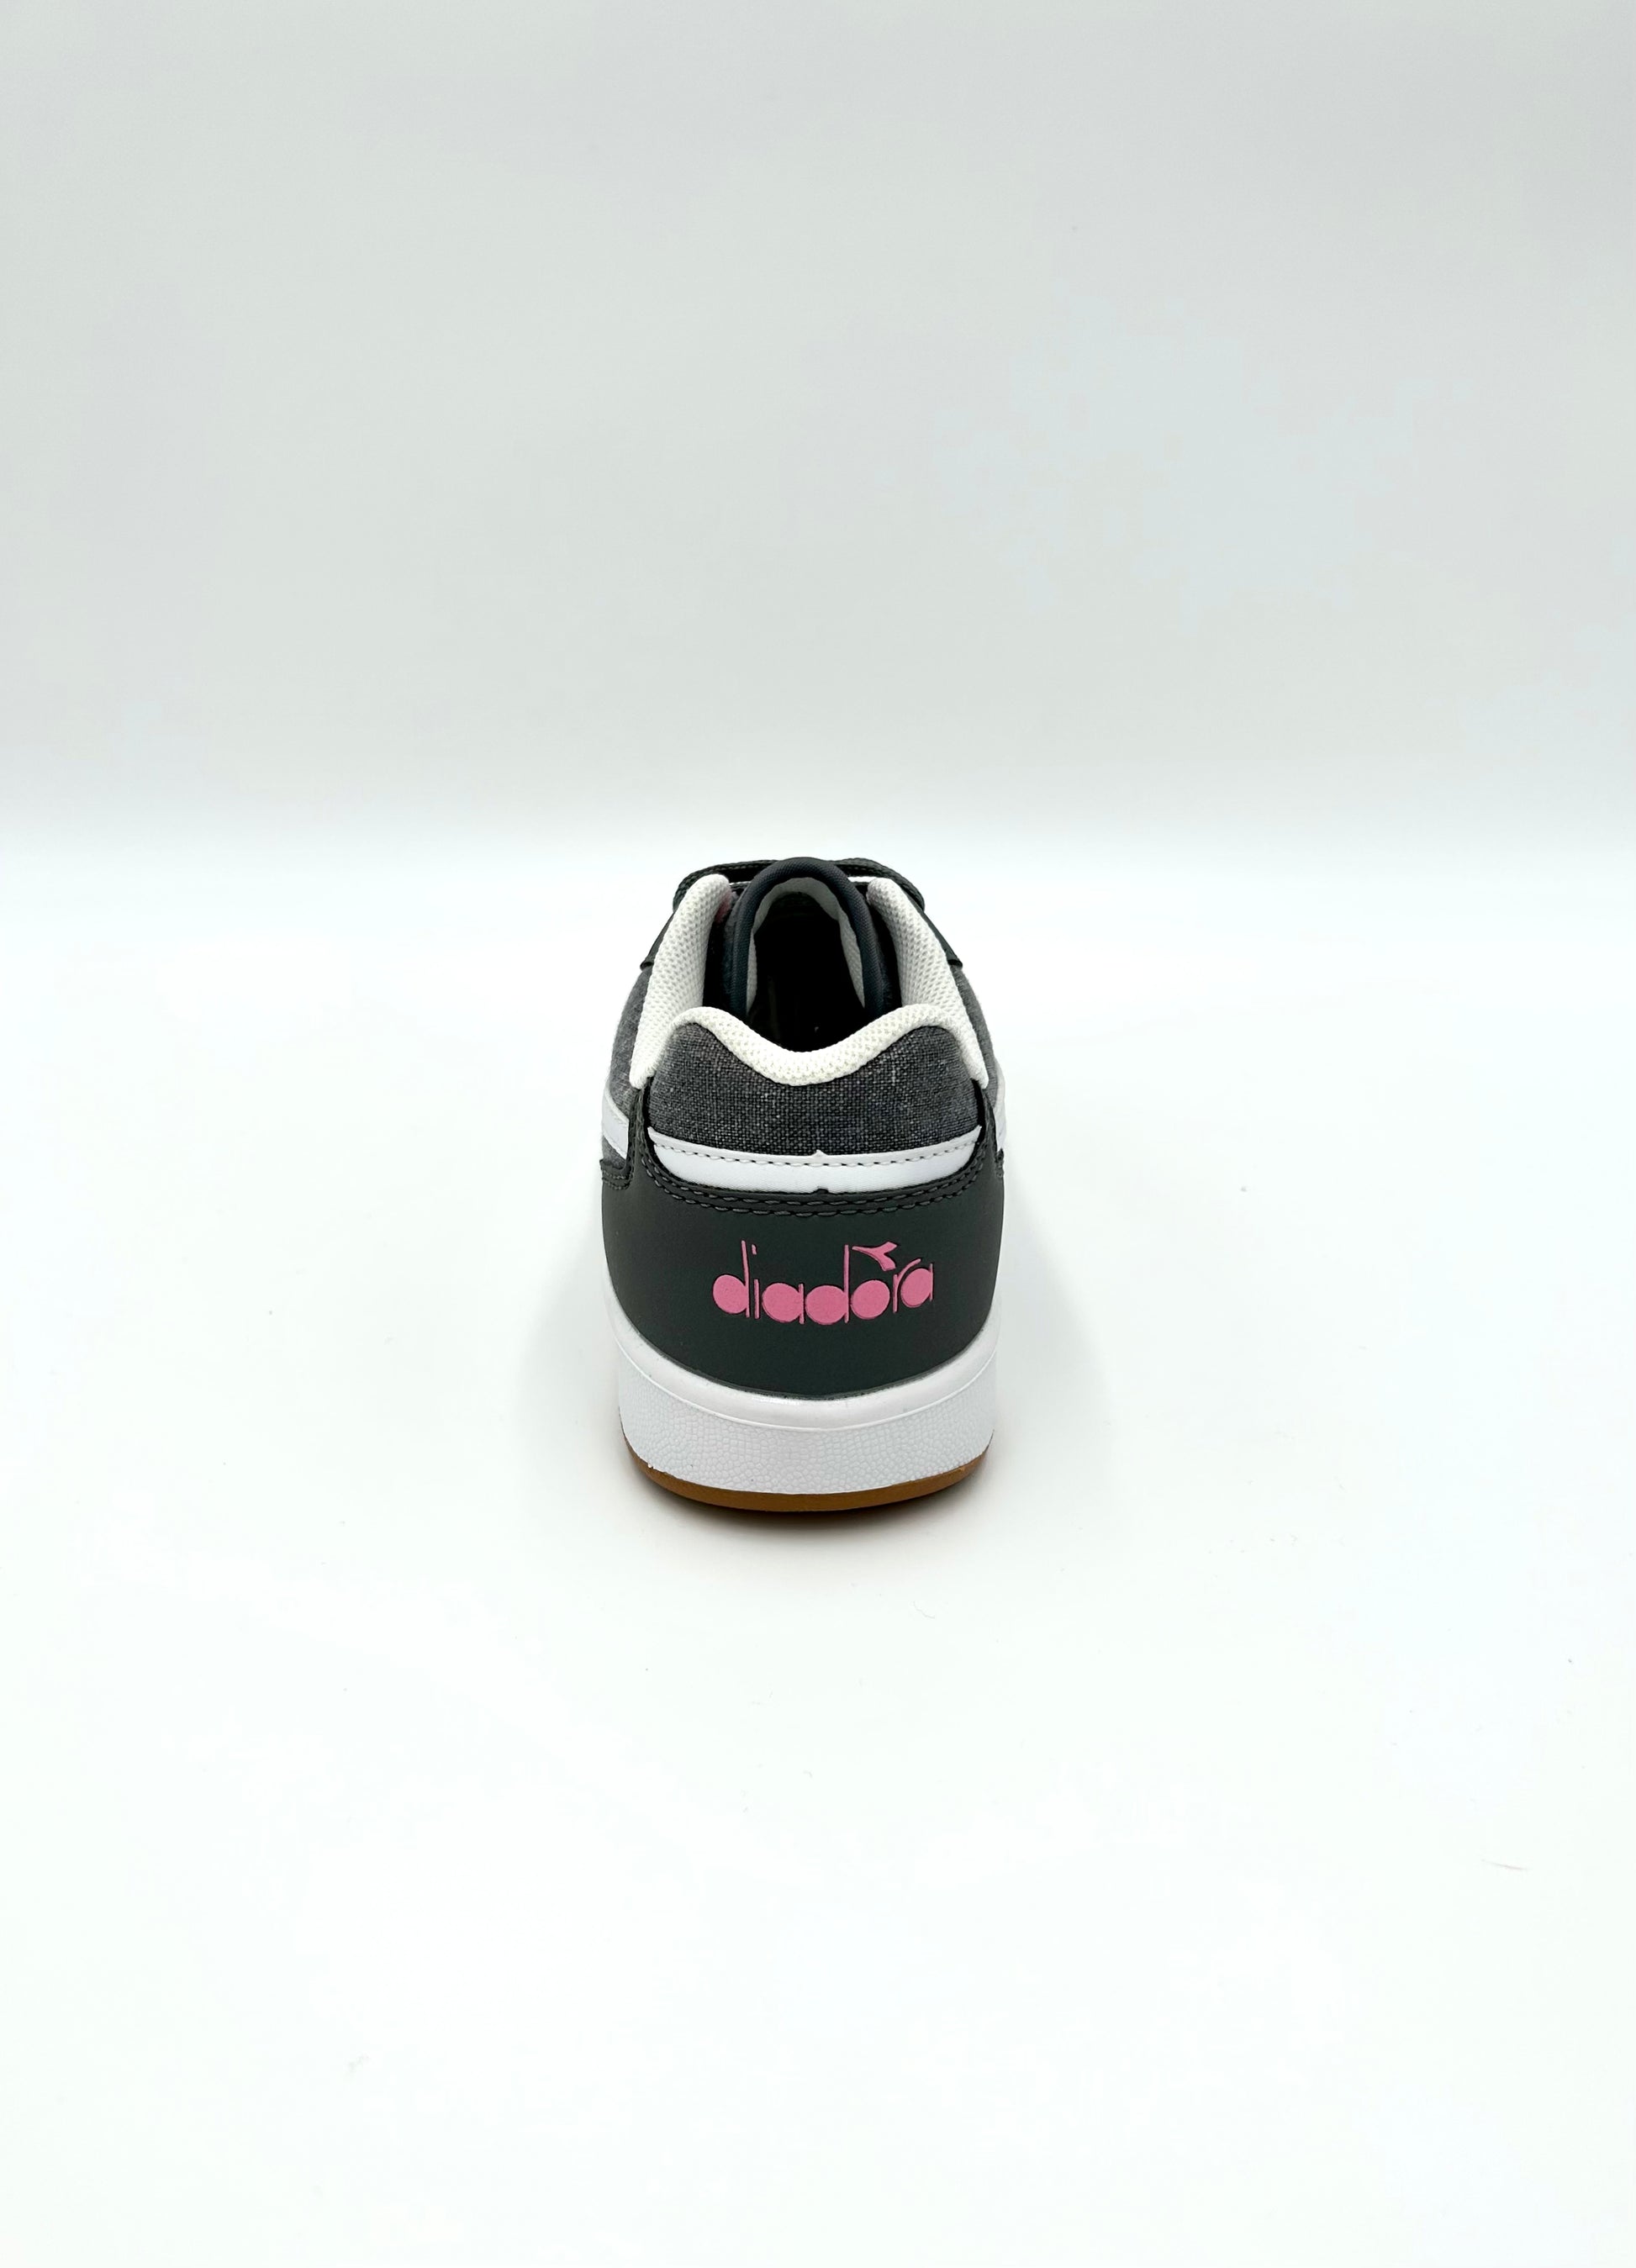 Diadora Sneakers Playground CV GS- grey - Diadora